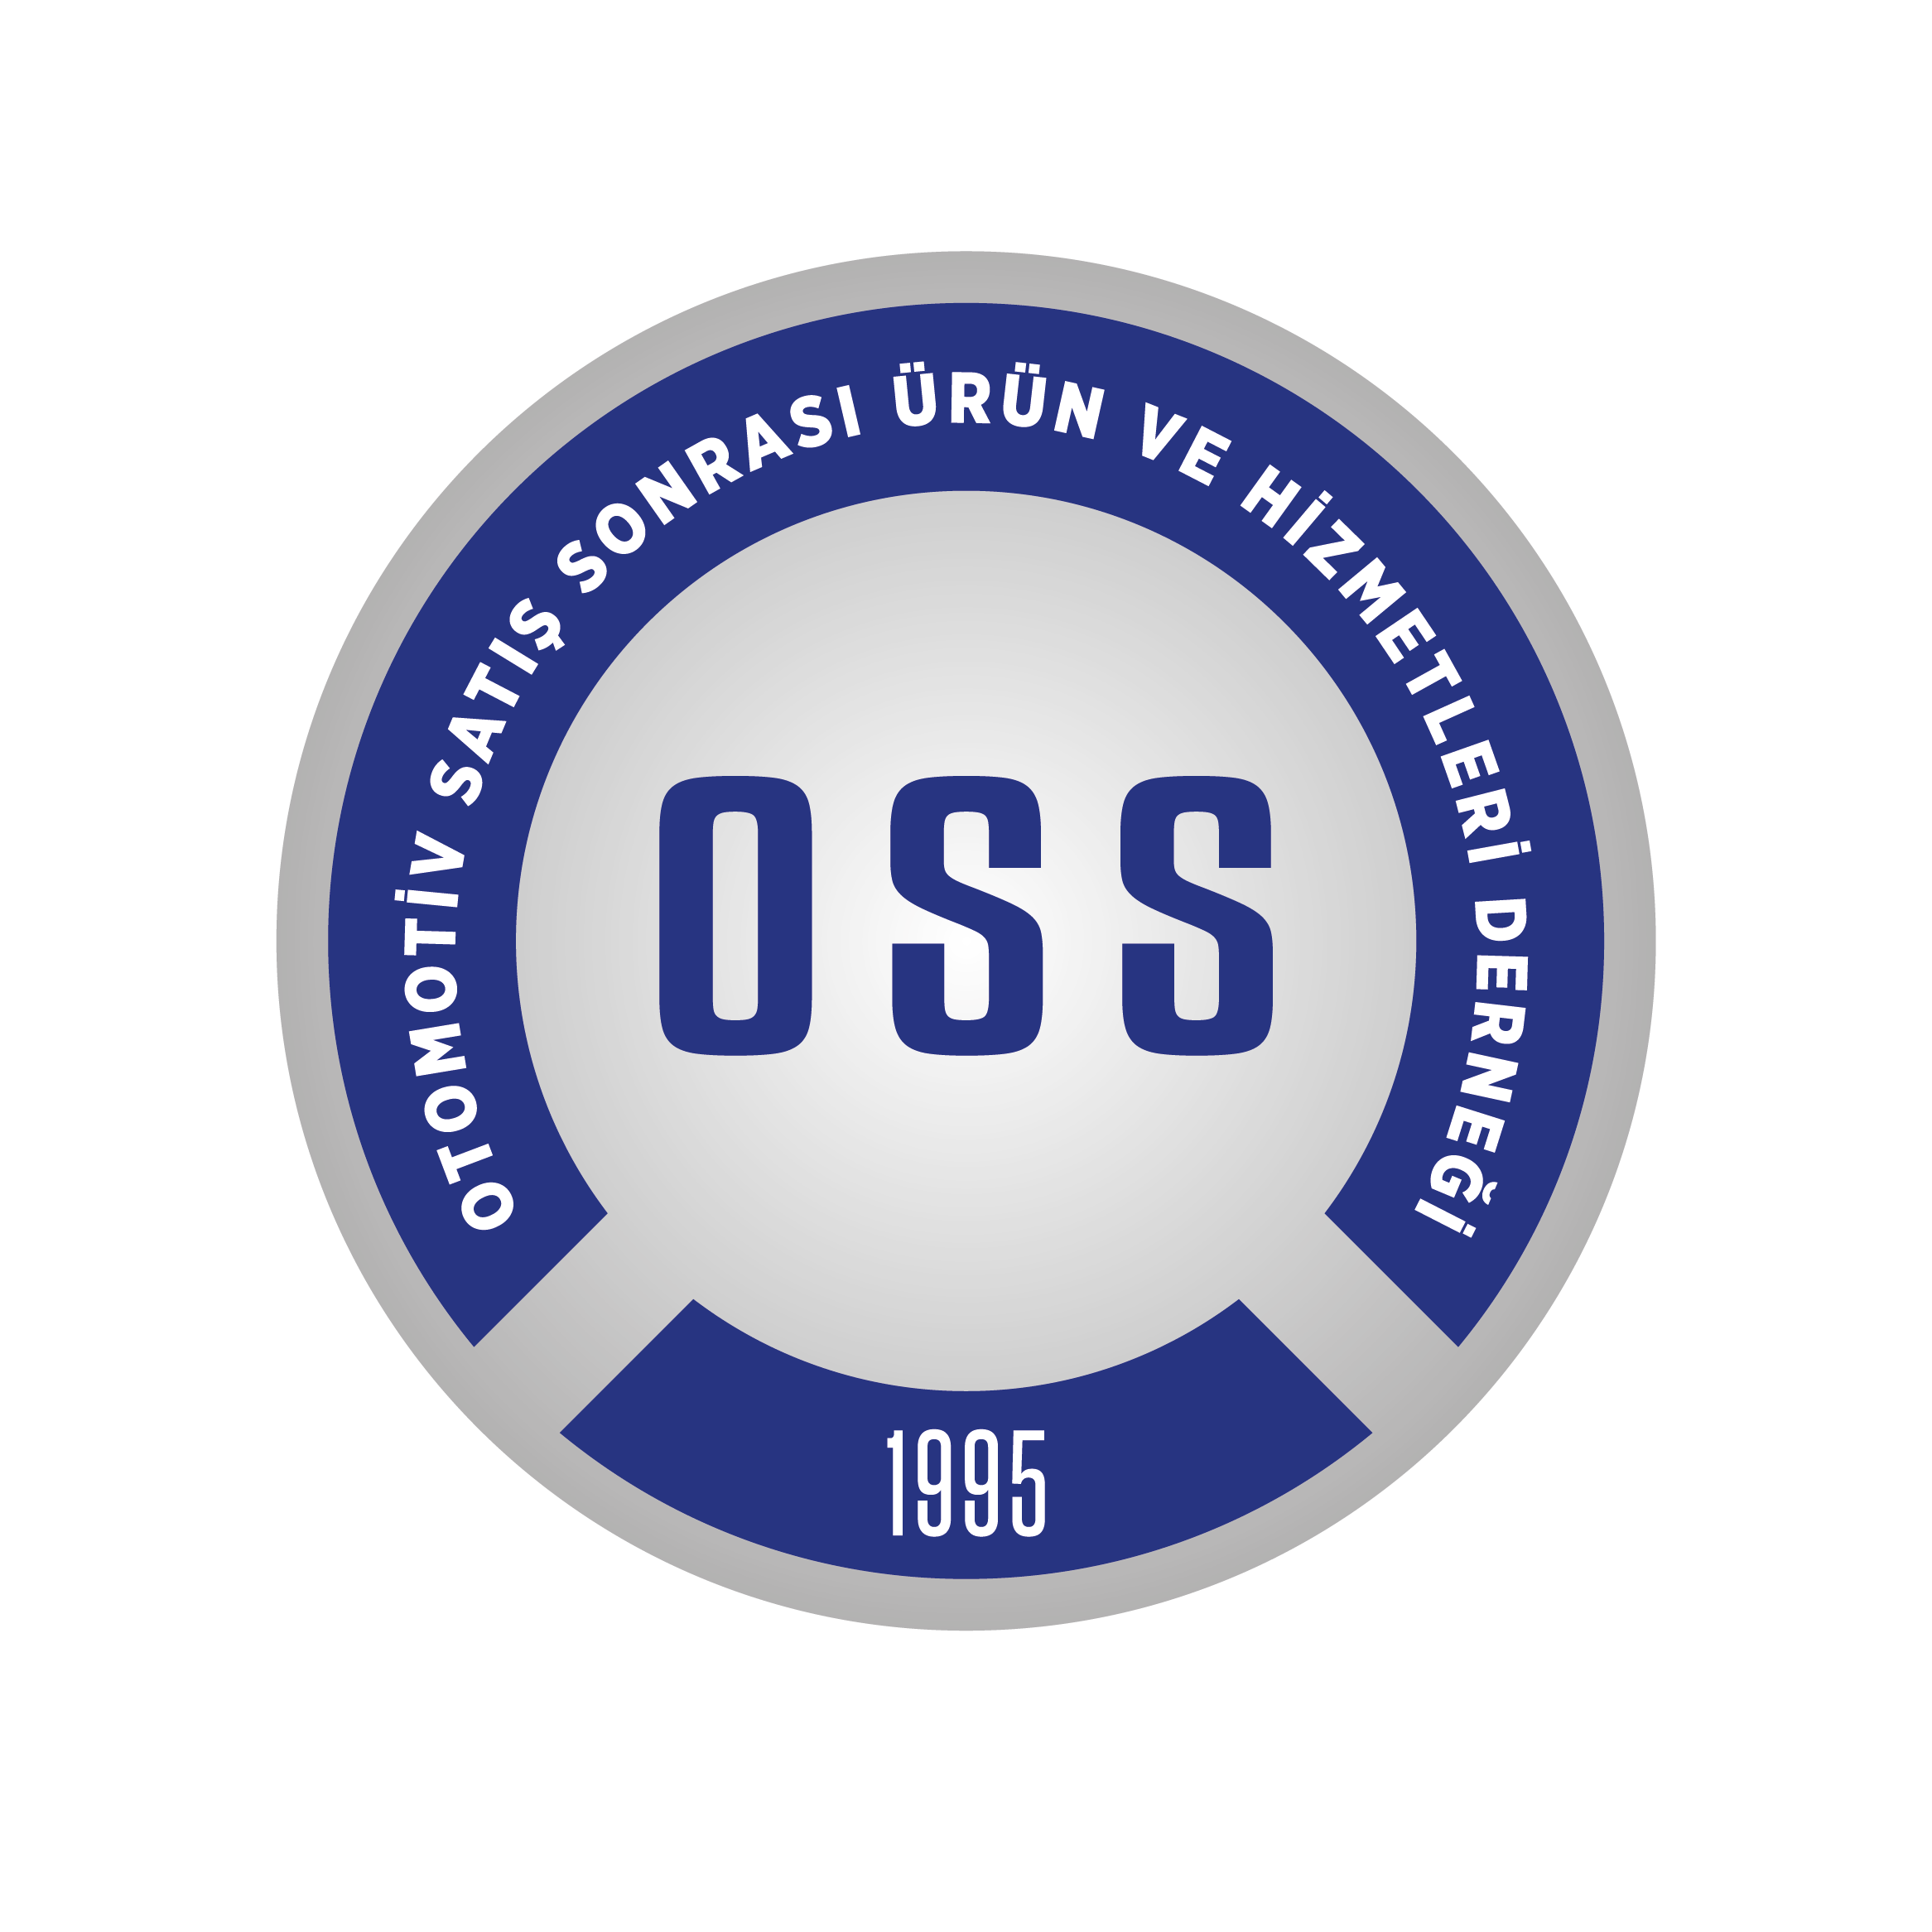 OSS Derneği 2020 Yılını Değerlendirdi!_10.01.2021